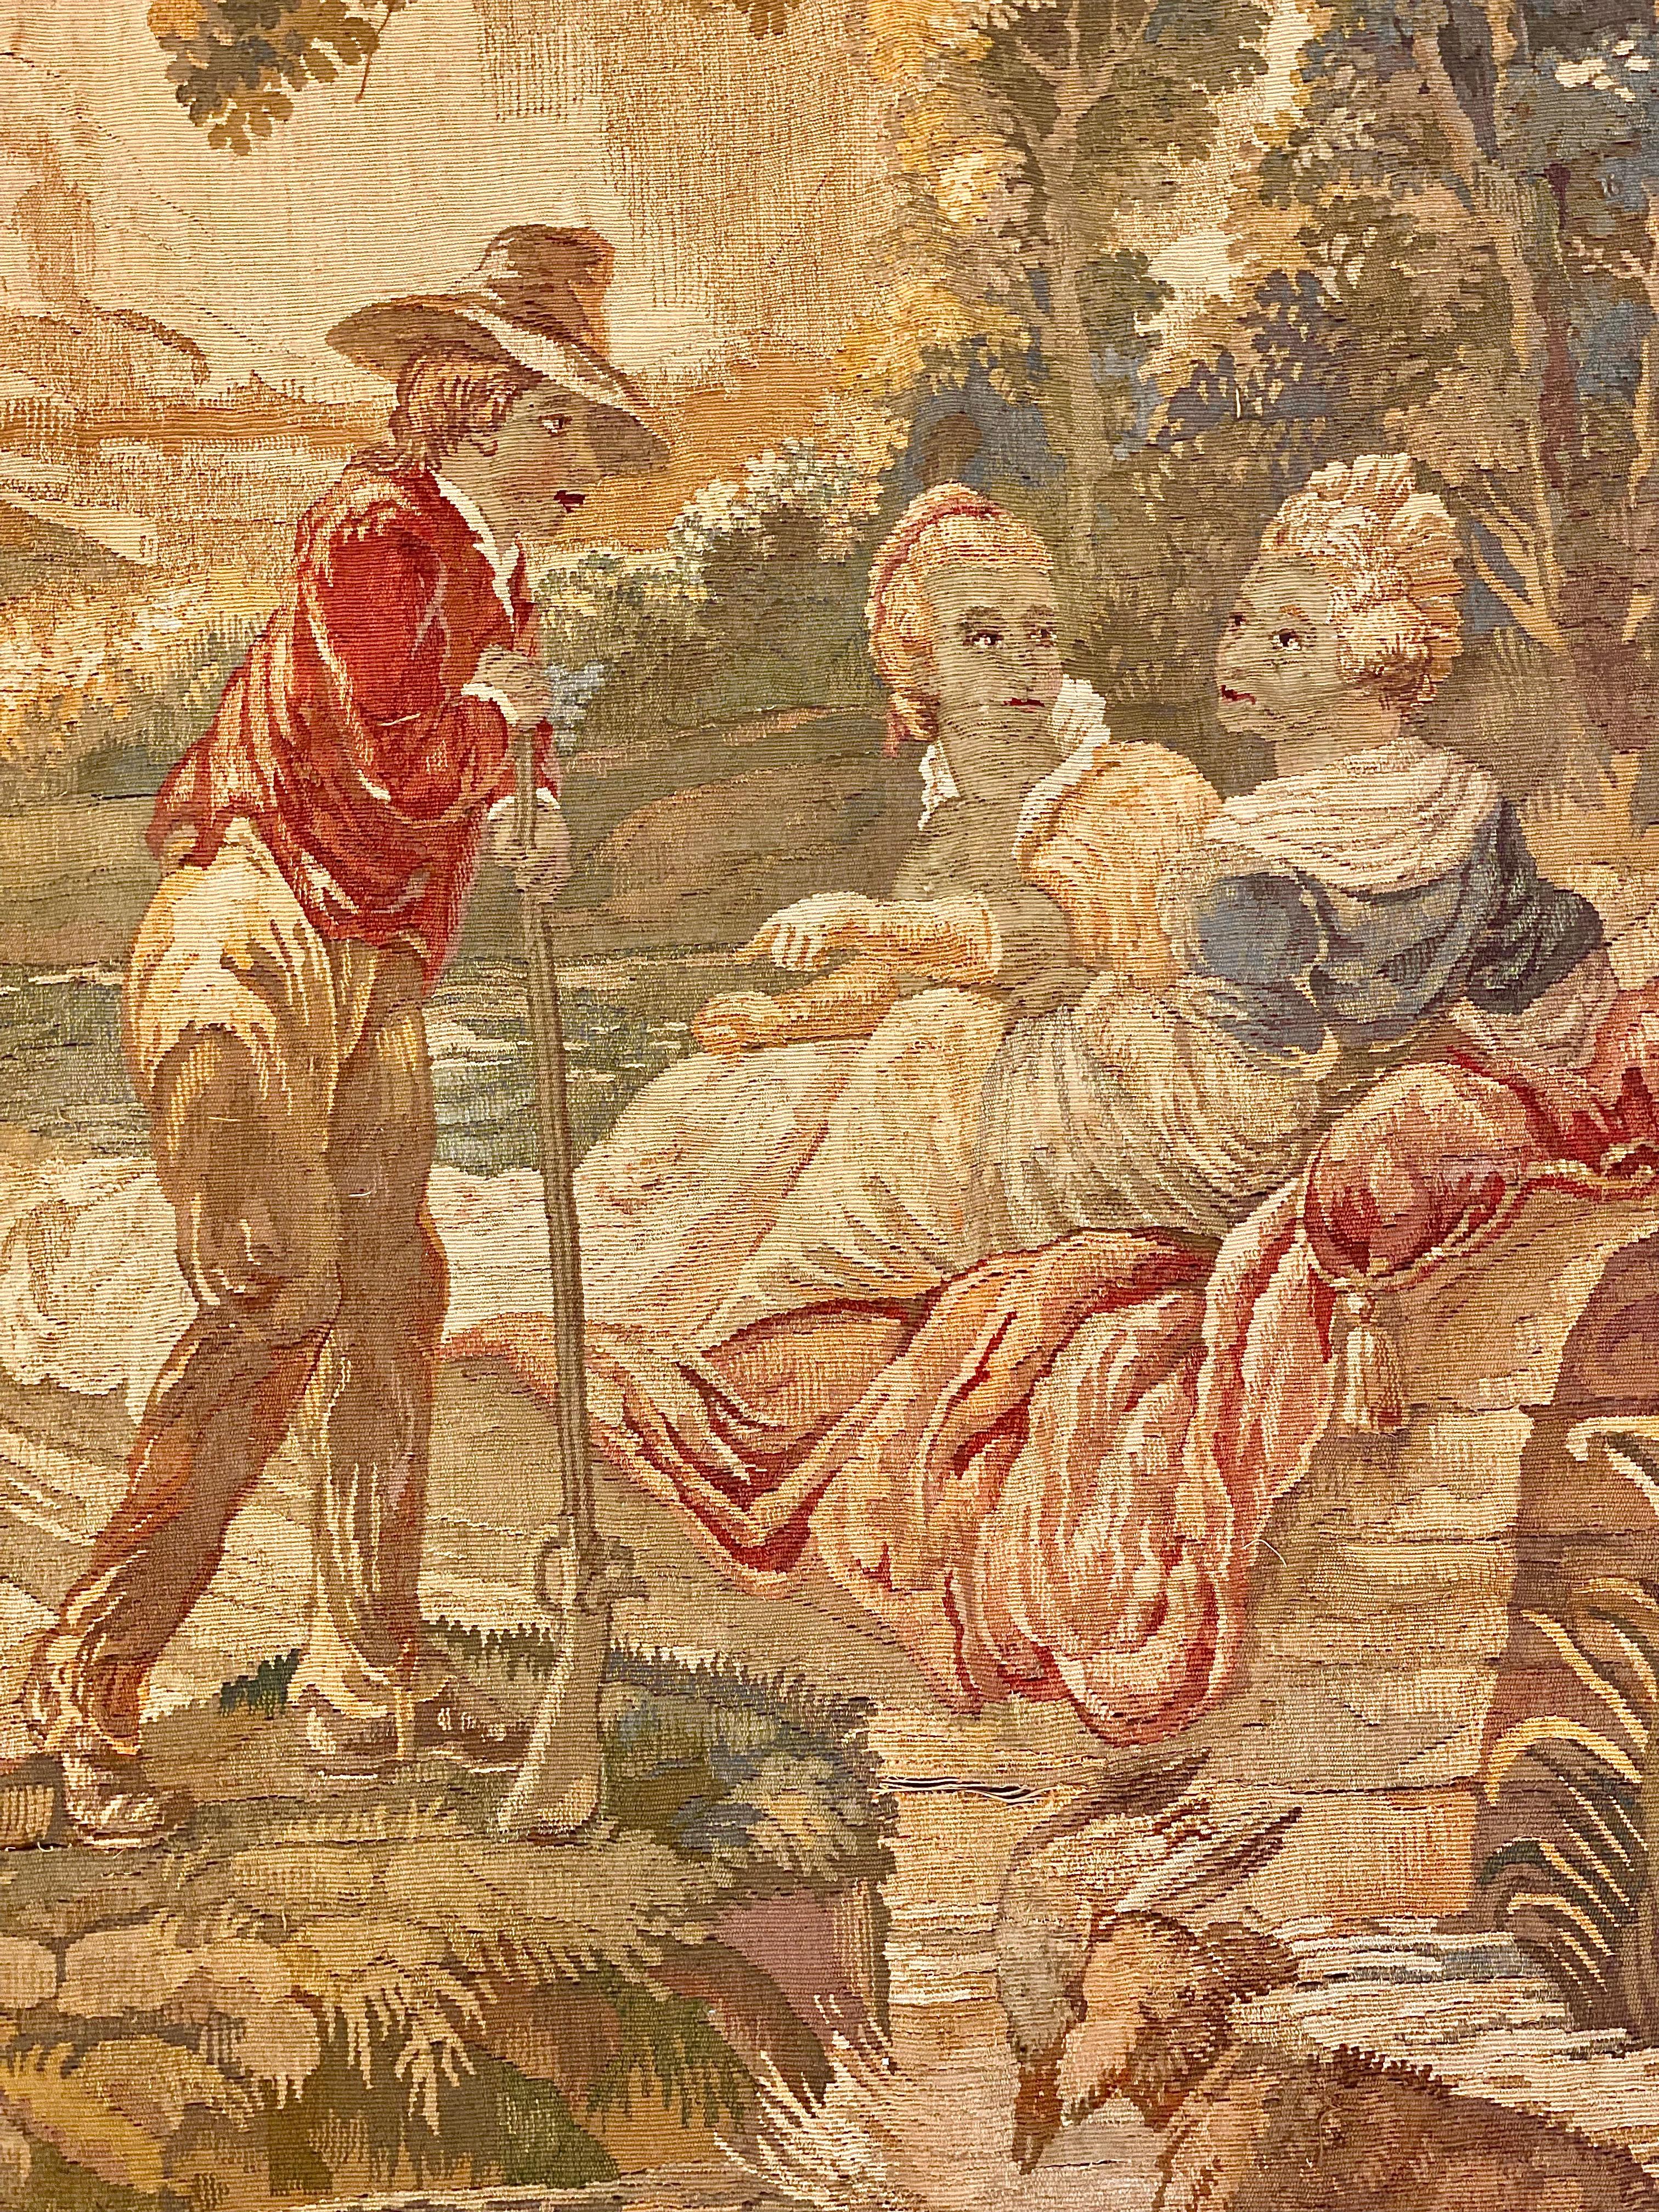 Ein feiner und üppiger Aubusson-Wandteppich aus dem späten 19. Jahrhundert, der eine galante Szene in einer pastoralen Umgebung zeigt. Zwei Jungfrauen sitzen in einem kleinen Boot auf einem Fluss vor dem Hintergrund von Bäumen und Felsen in der